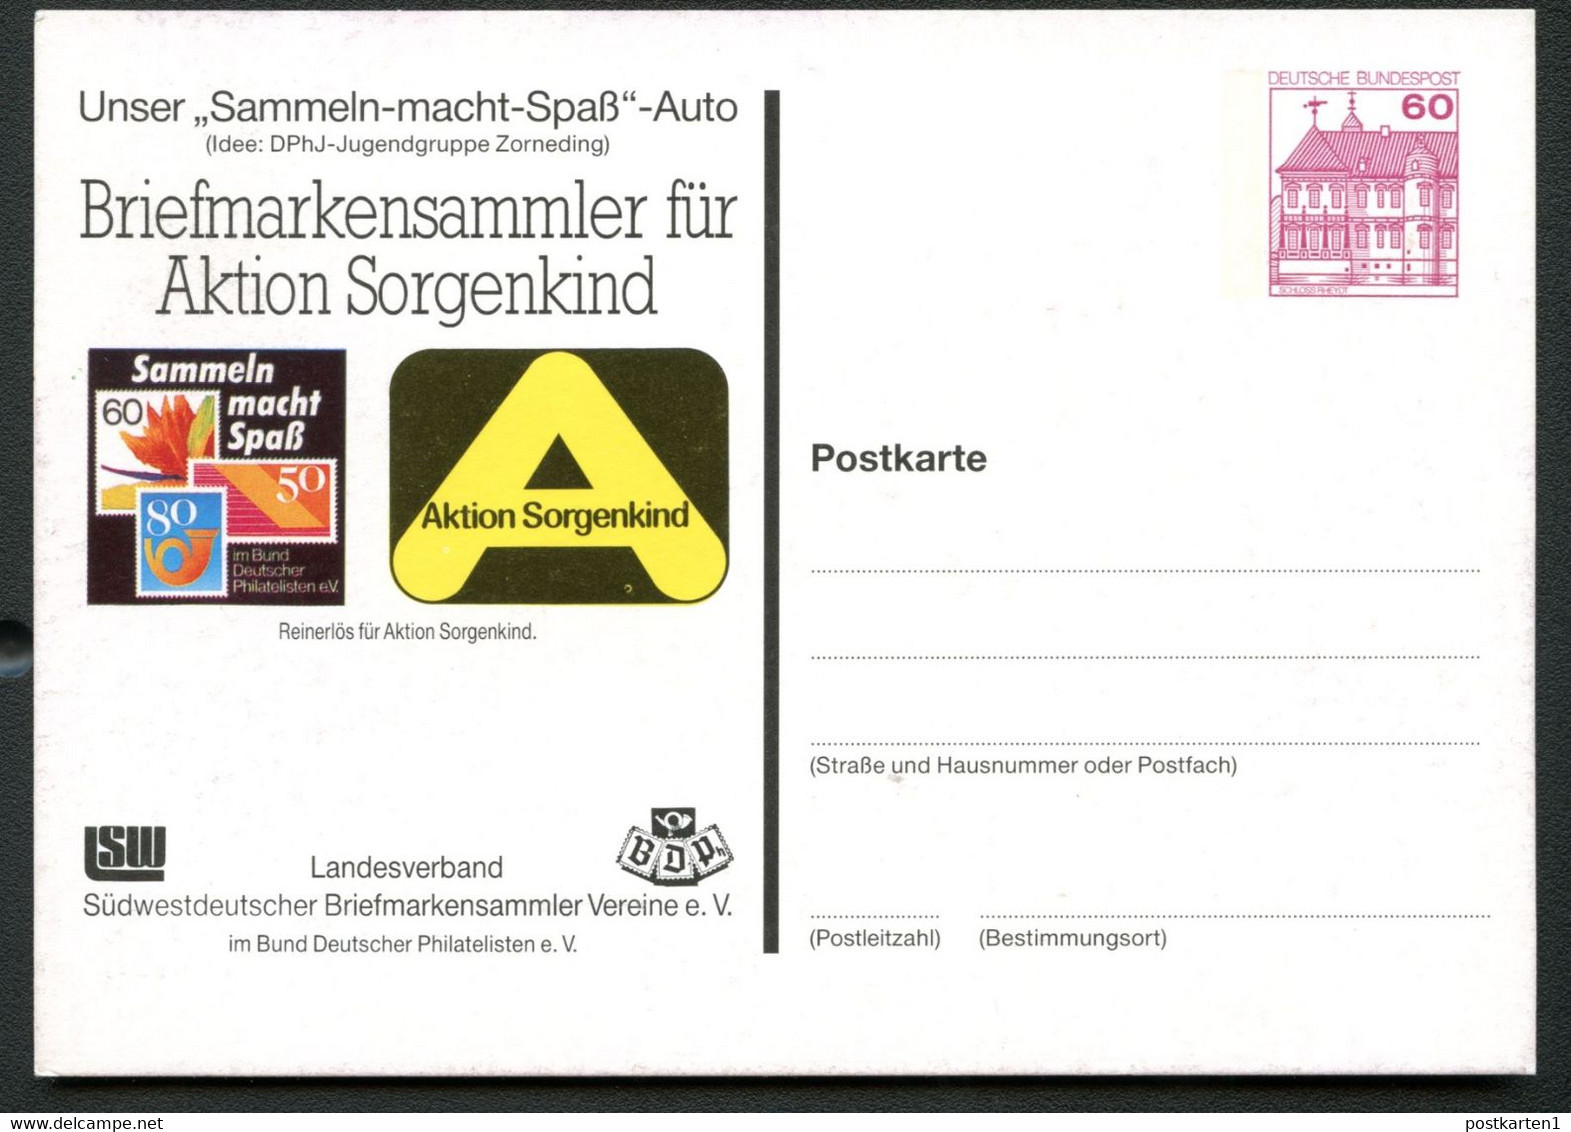 Bund PP106 B1/012-1 Aktion Sorgenkind ERSTES BRIEFMARKENAUTO Sindelfingen 1987 - Privé Postkaarten - Ongebruikt